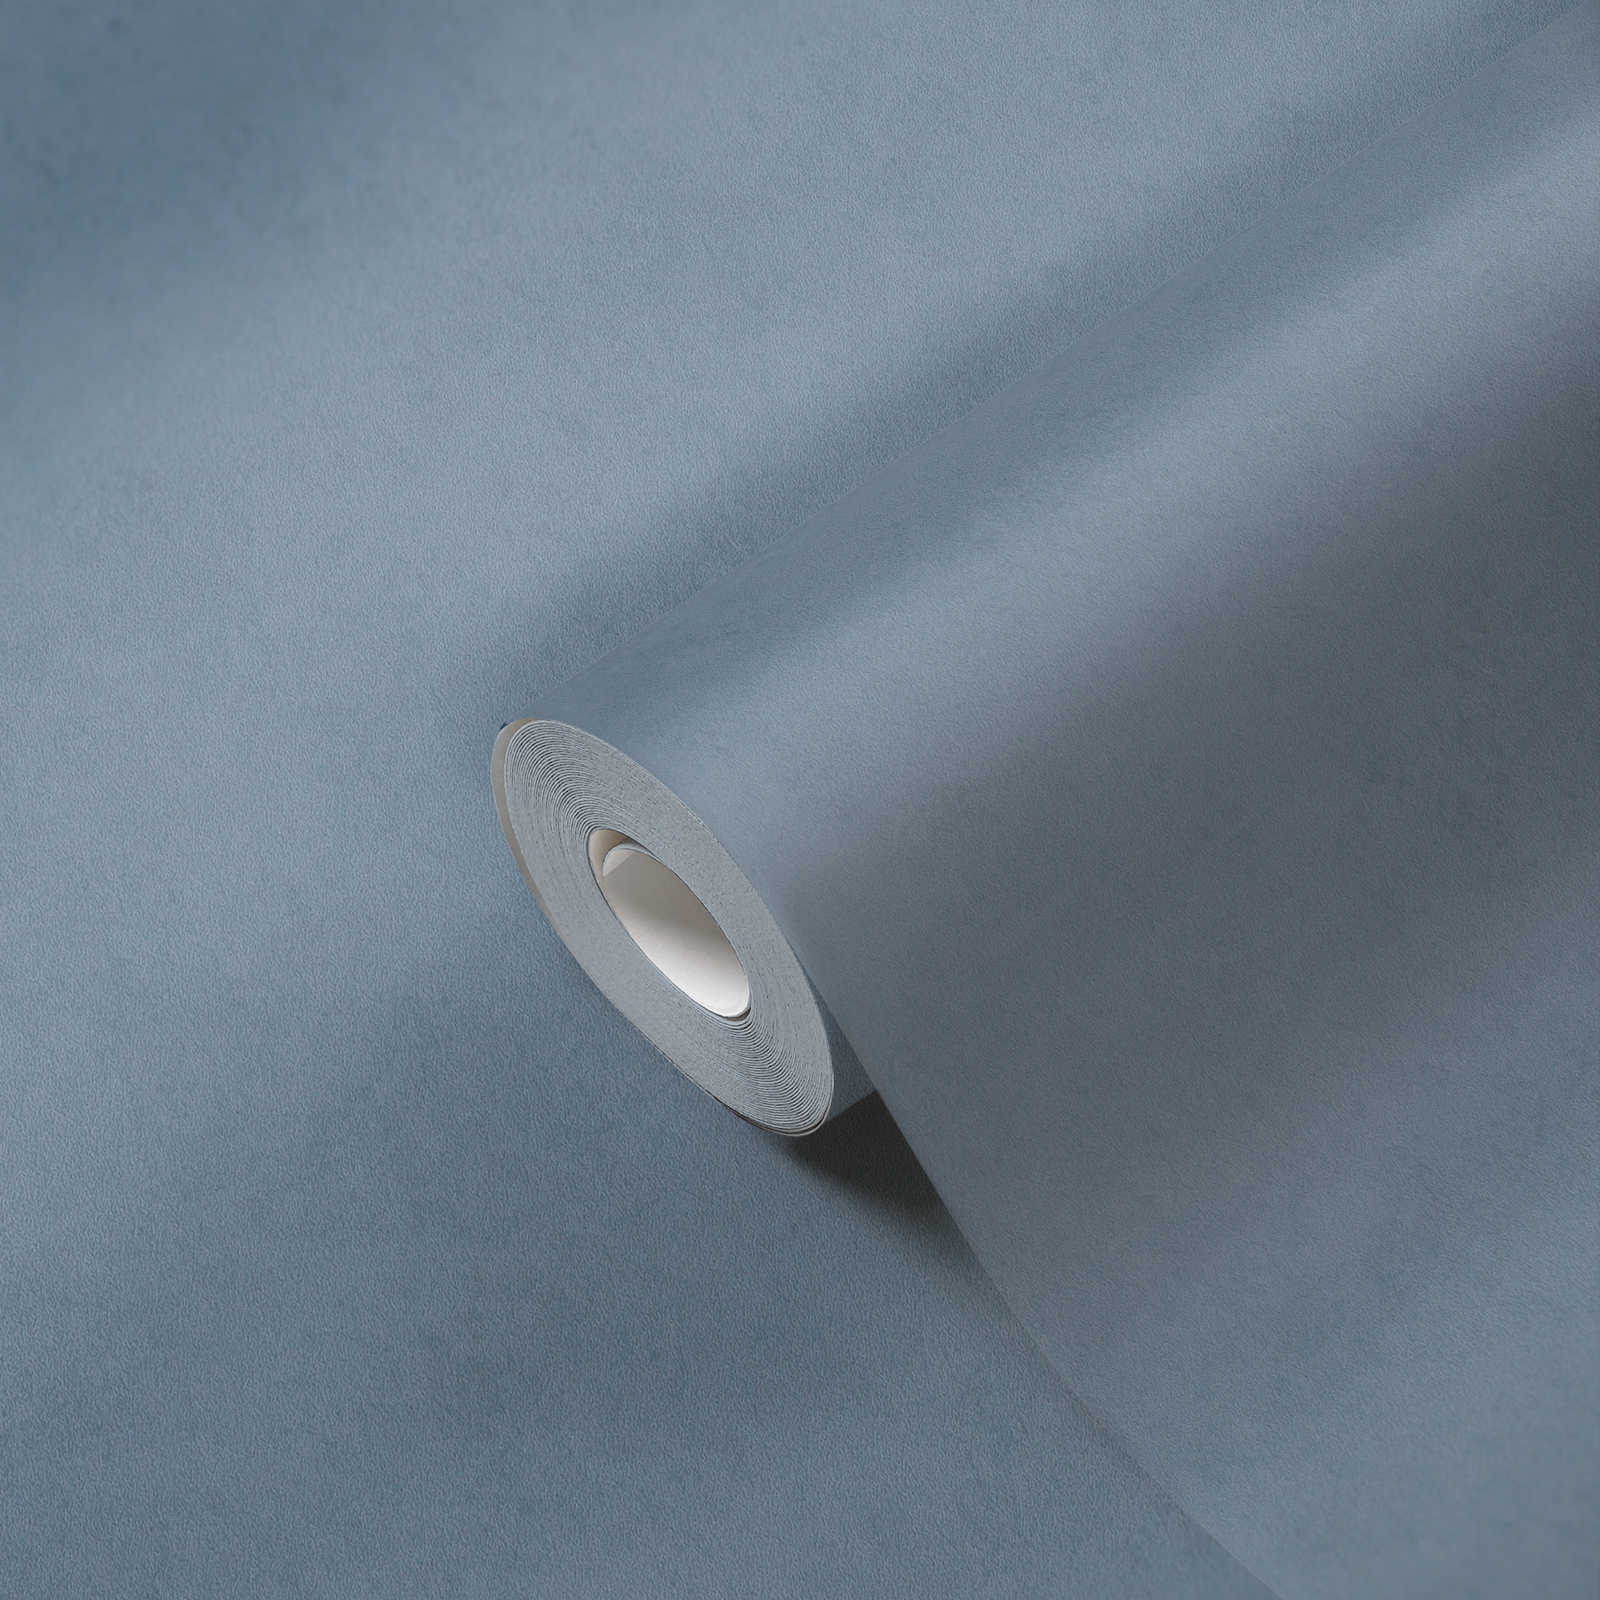             Non-woven wallpaper plain - blue
        